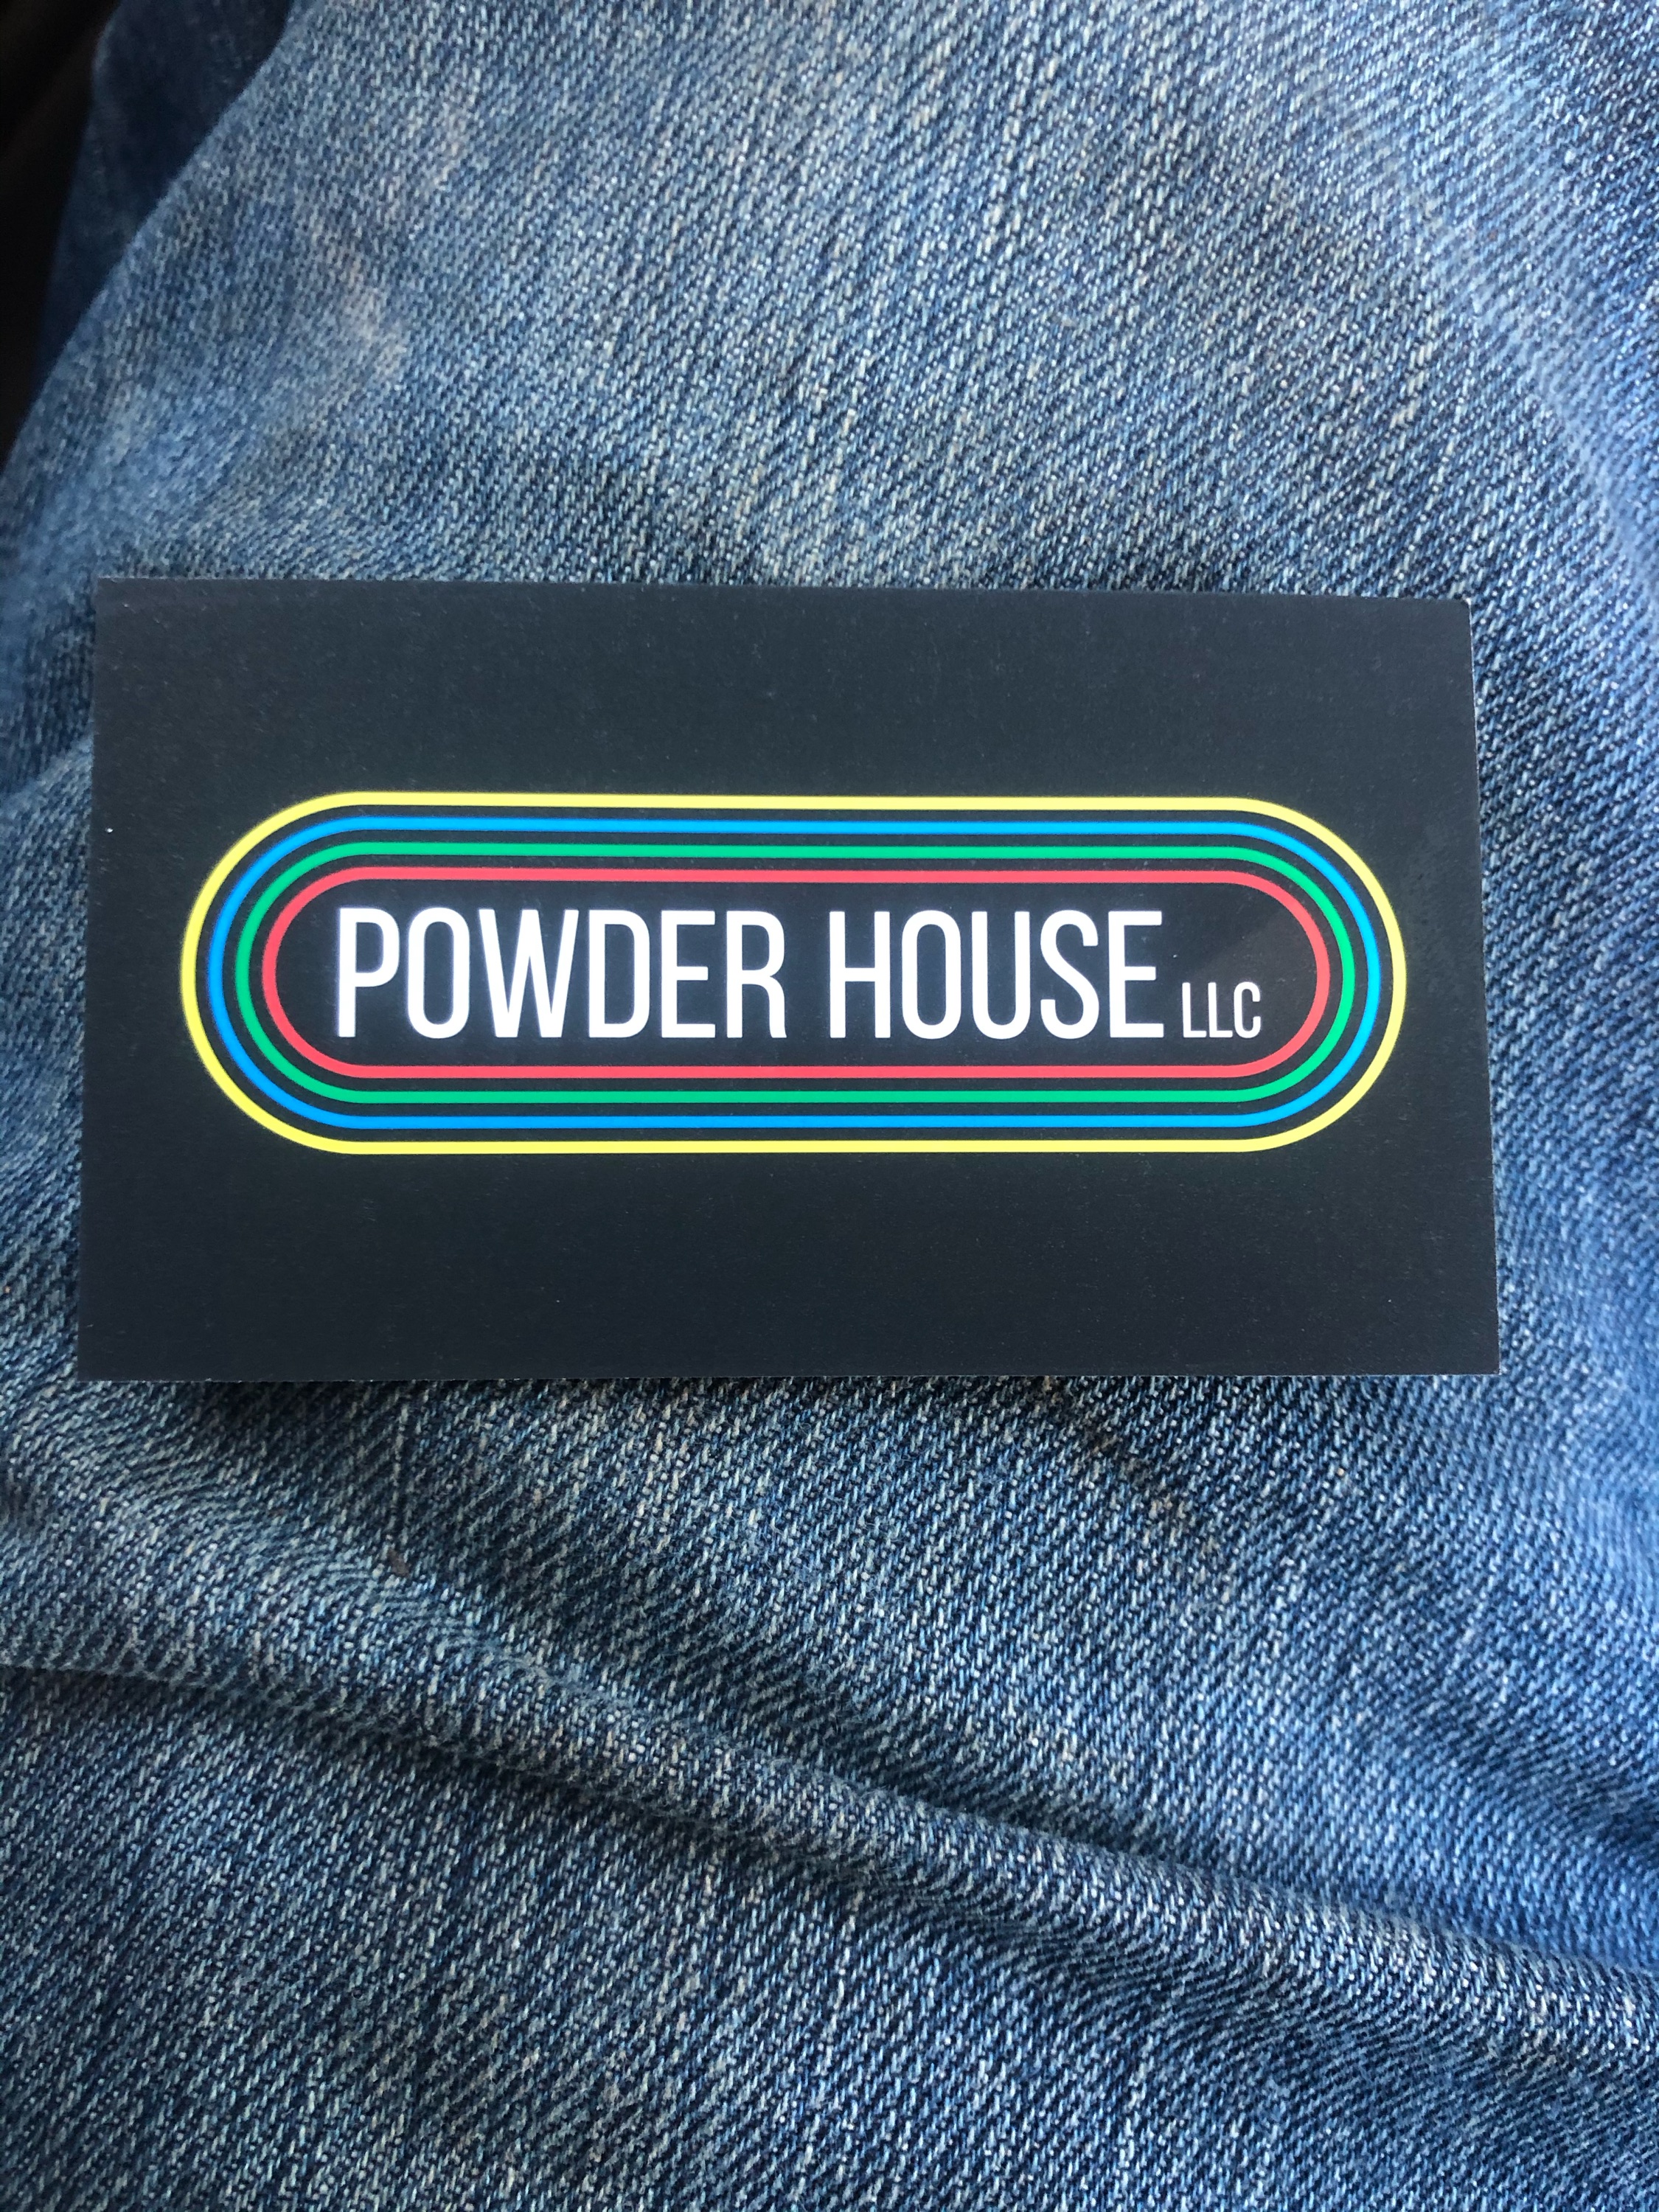 Powder House, LLC Logo